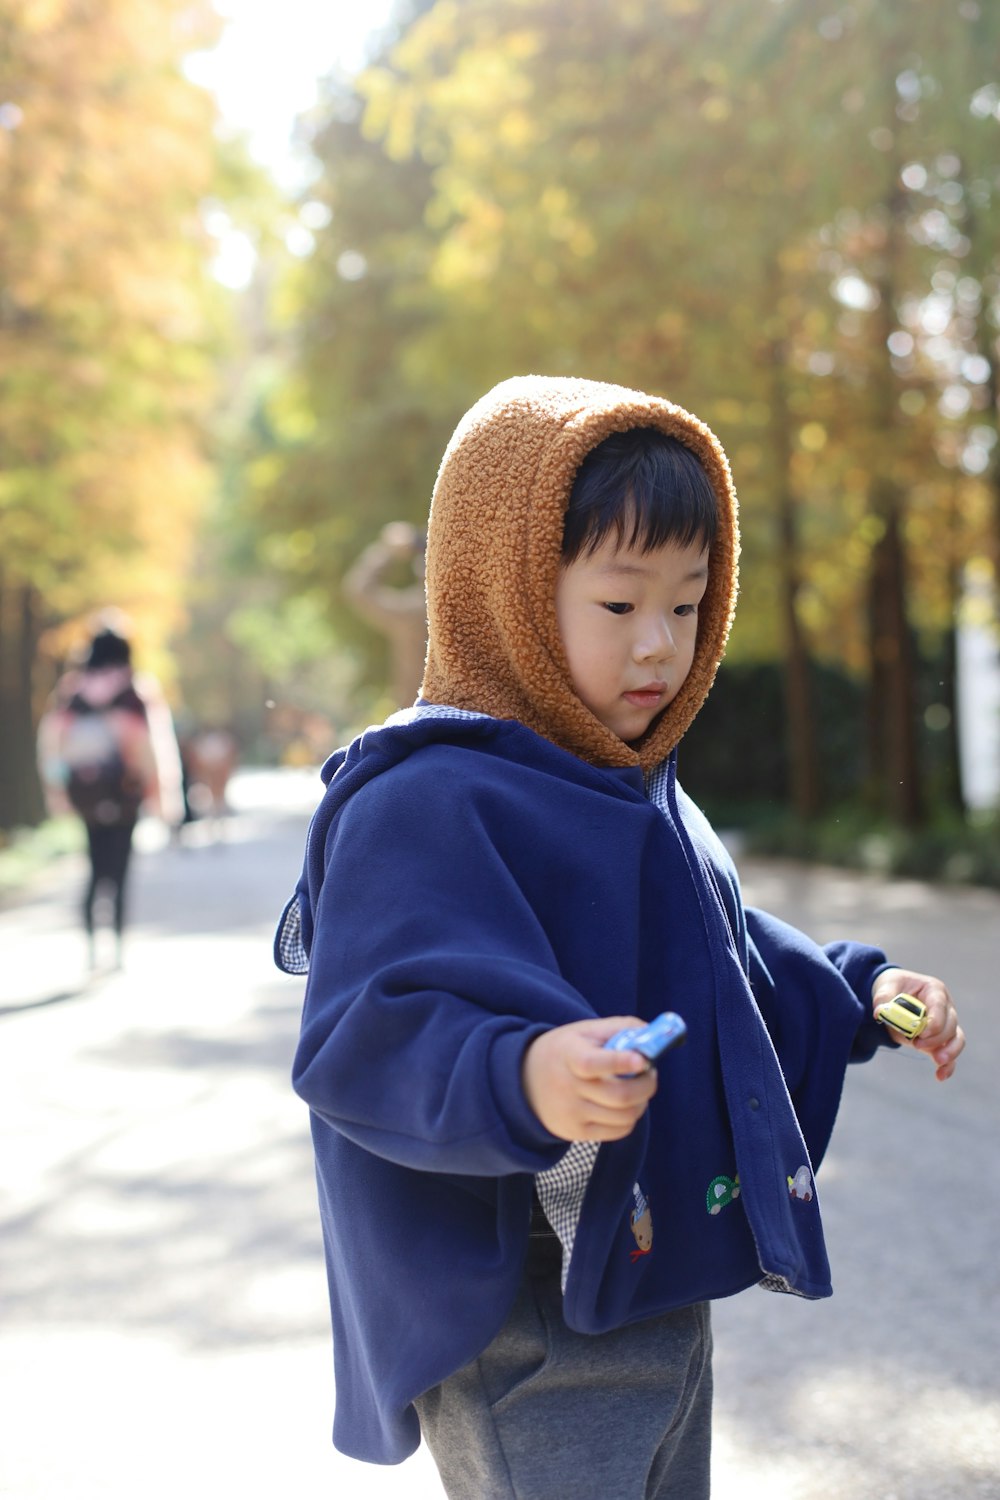 Ein kleiner Junge in einem blauen Kapuzenpulli, der ein Handy hält